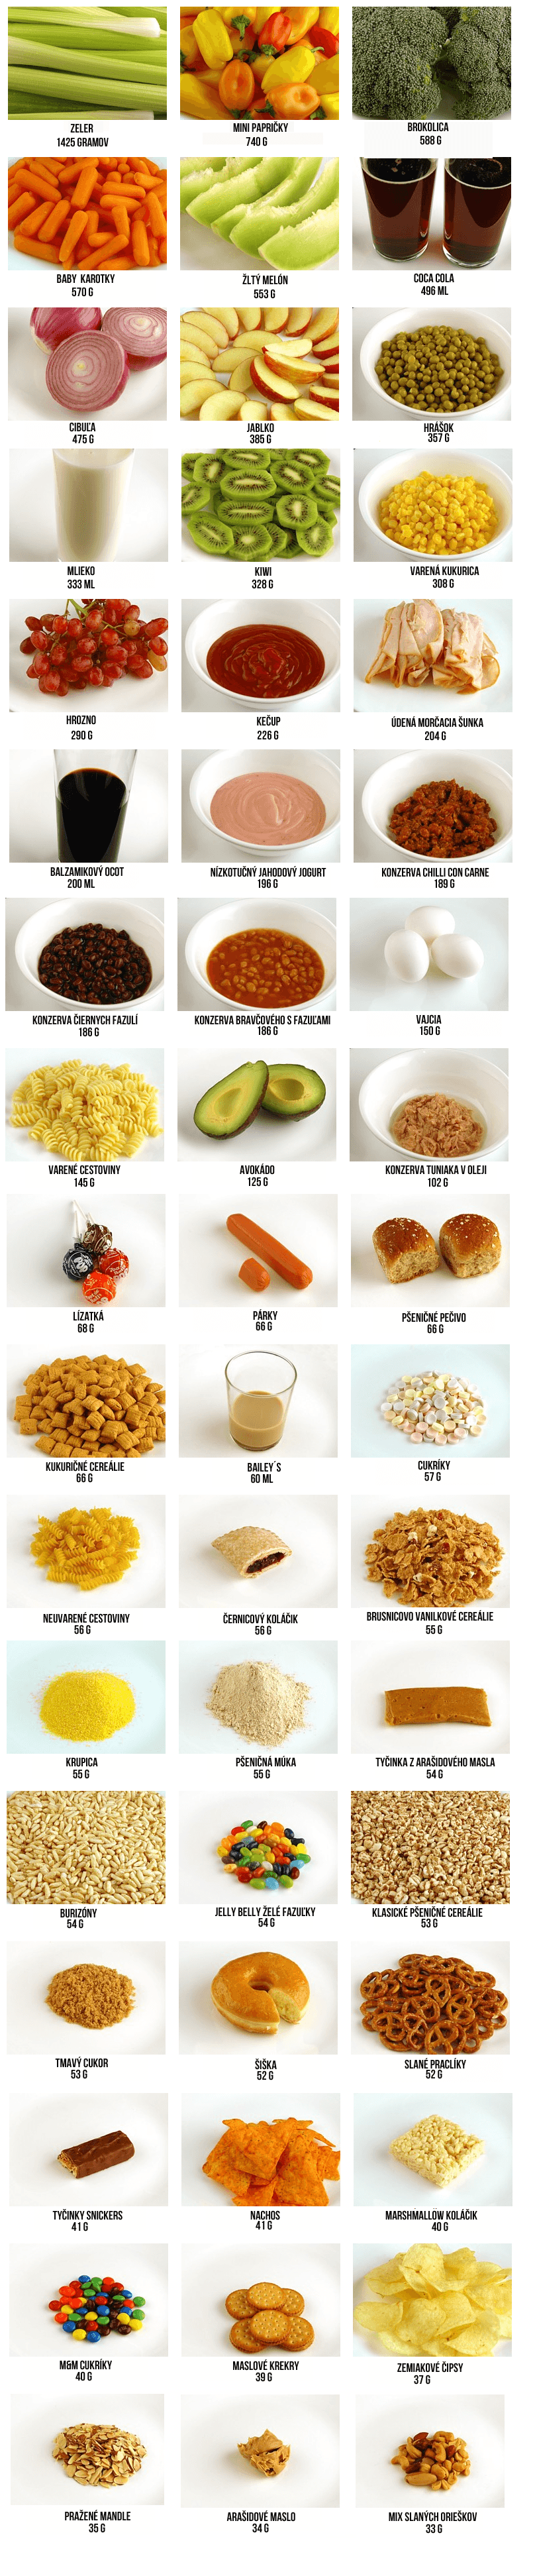 Jak vypadá 200 kcal v různých potravinách